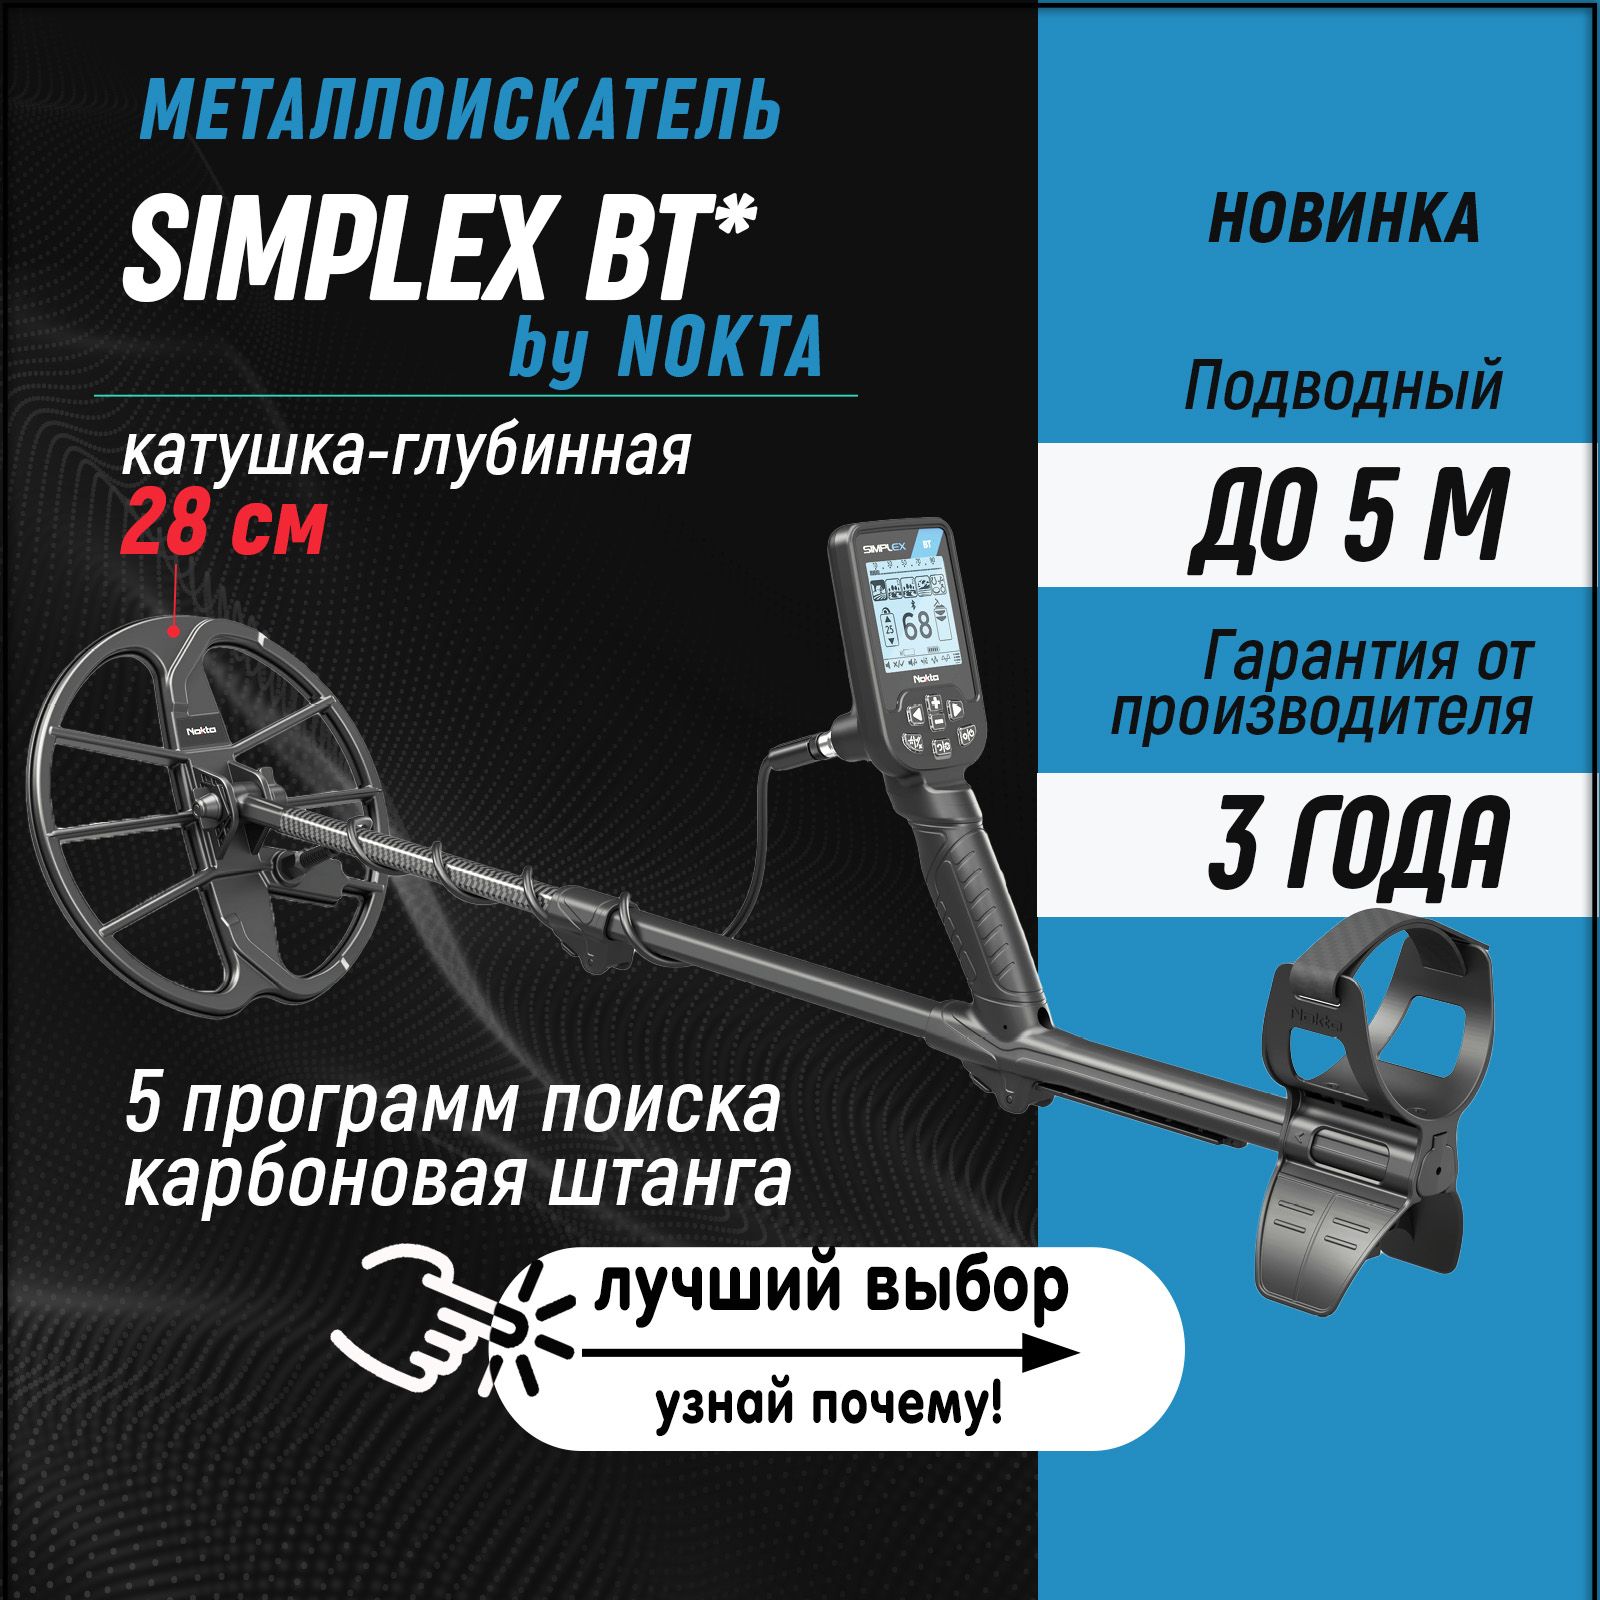 Изготовление датчиков для металлодетекторов - Металлоискатели - Форум по радиоэлектронике